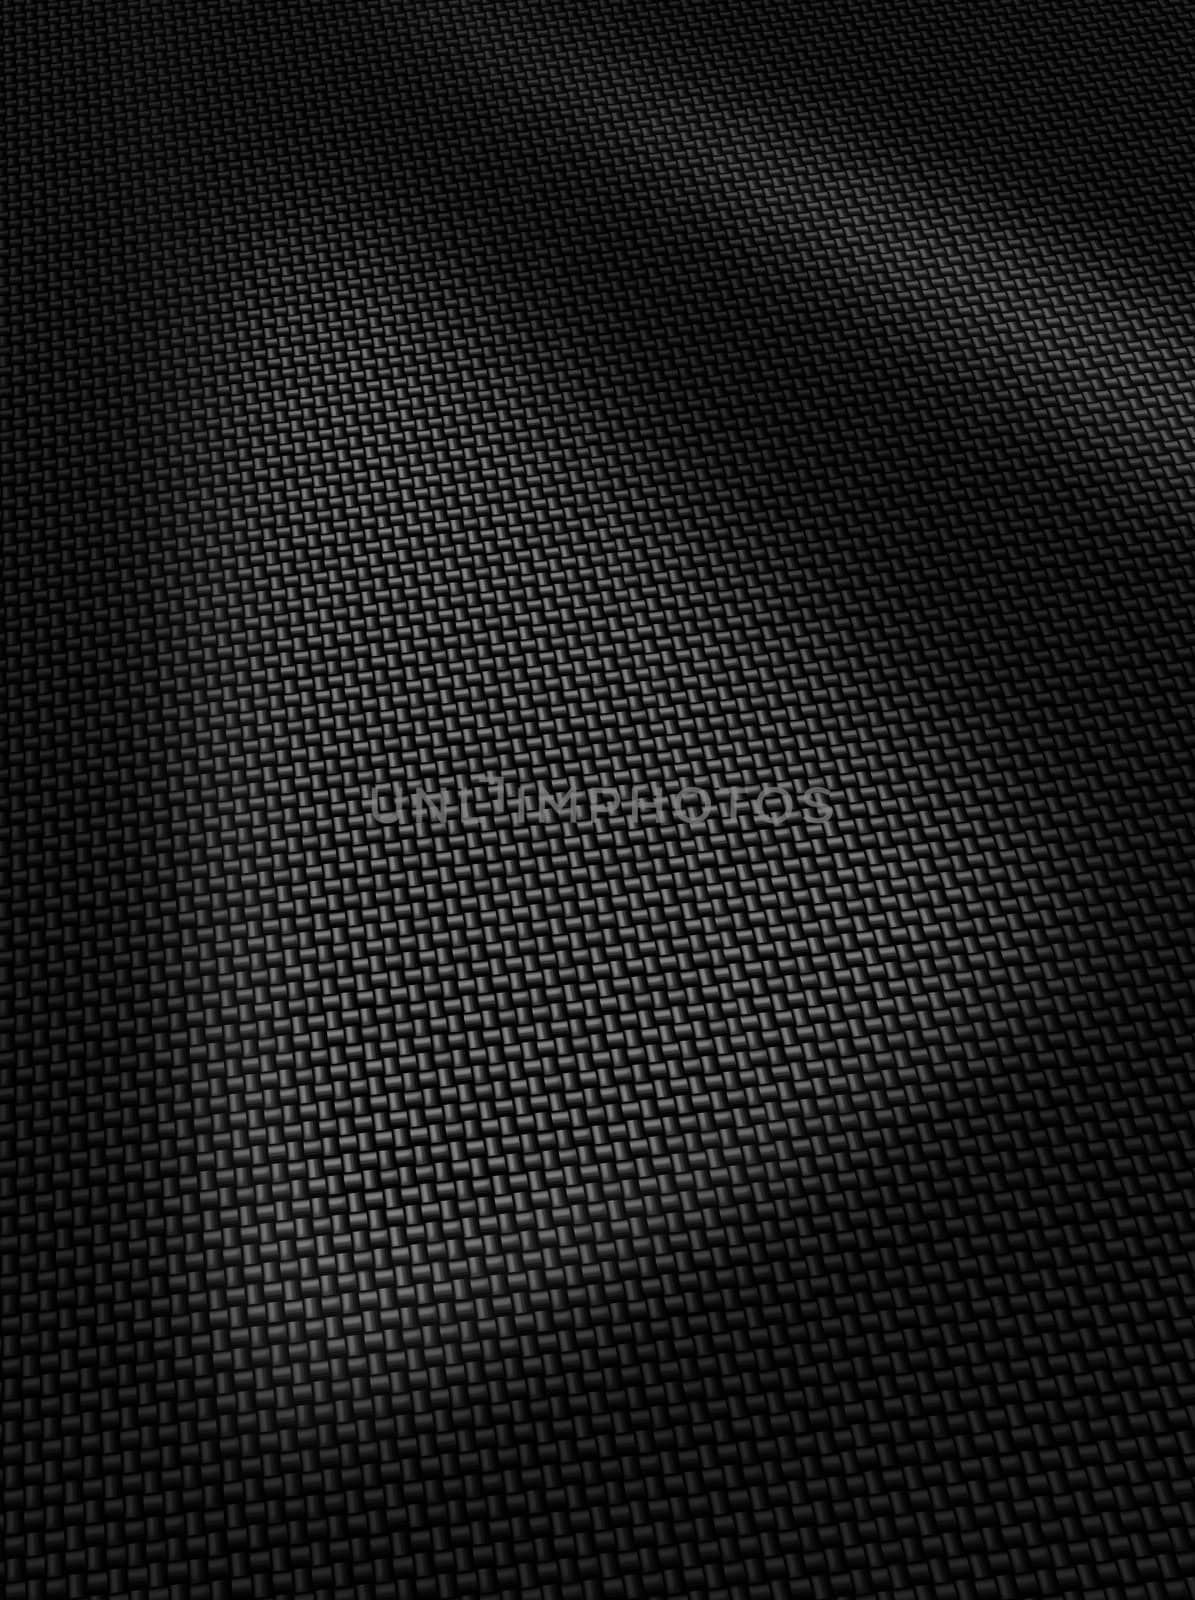 Woven carbon fibre surface texture by anterovium